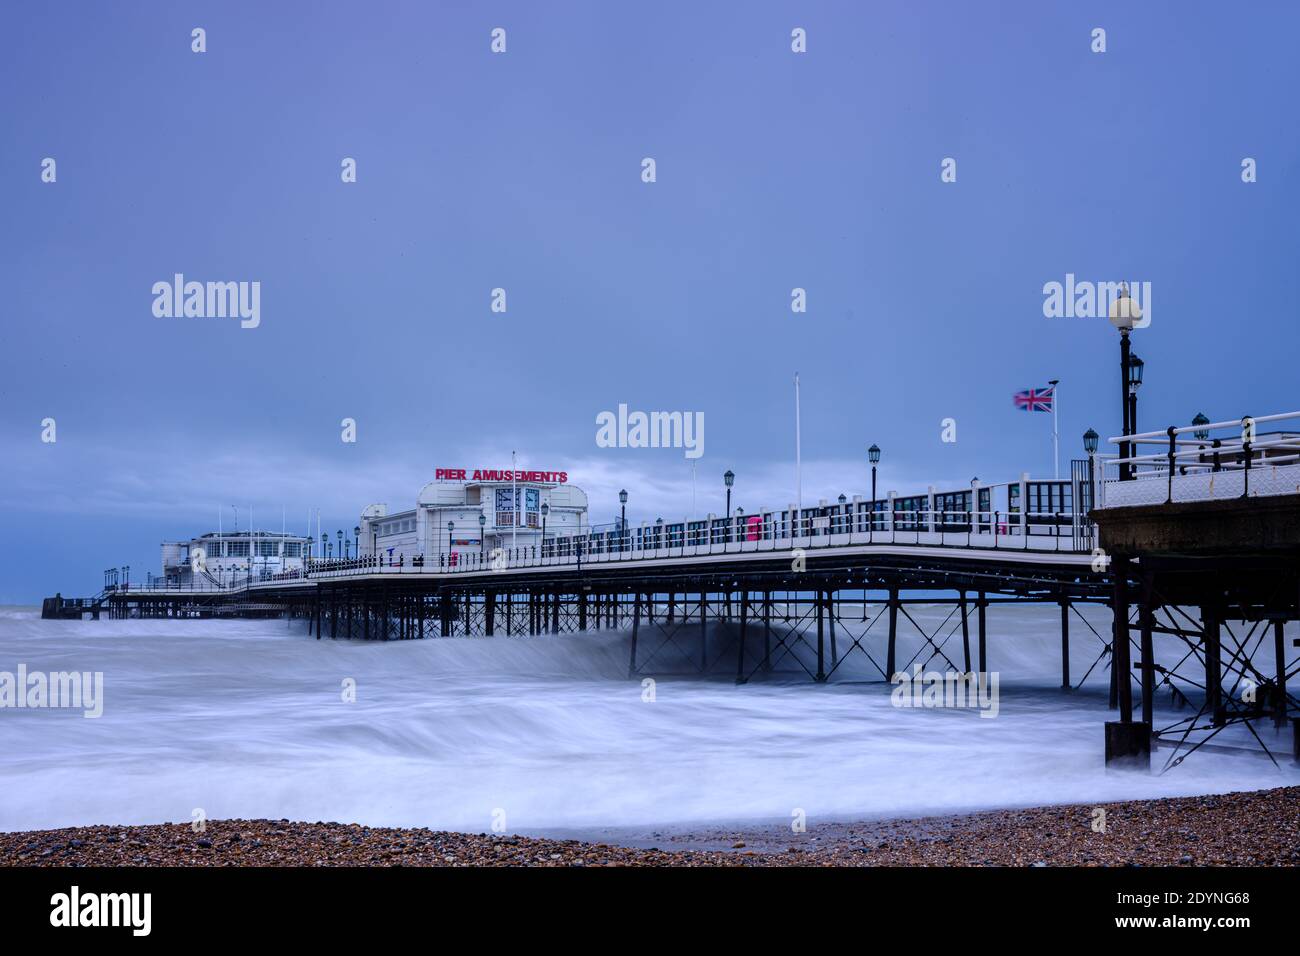 Worthing Pier, Worthing, Reino Unido. 27 de diciembre de 2020. Aguas tormentosas bateadores Worthing frente al mar. Imagen de crédito: Julie Edwards/Alamy Live News Foto de stock